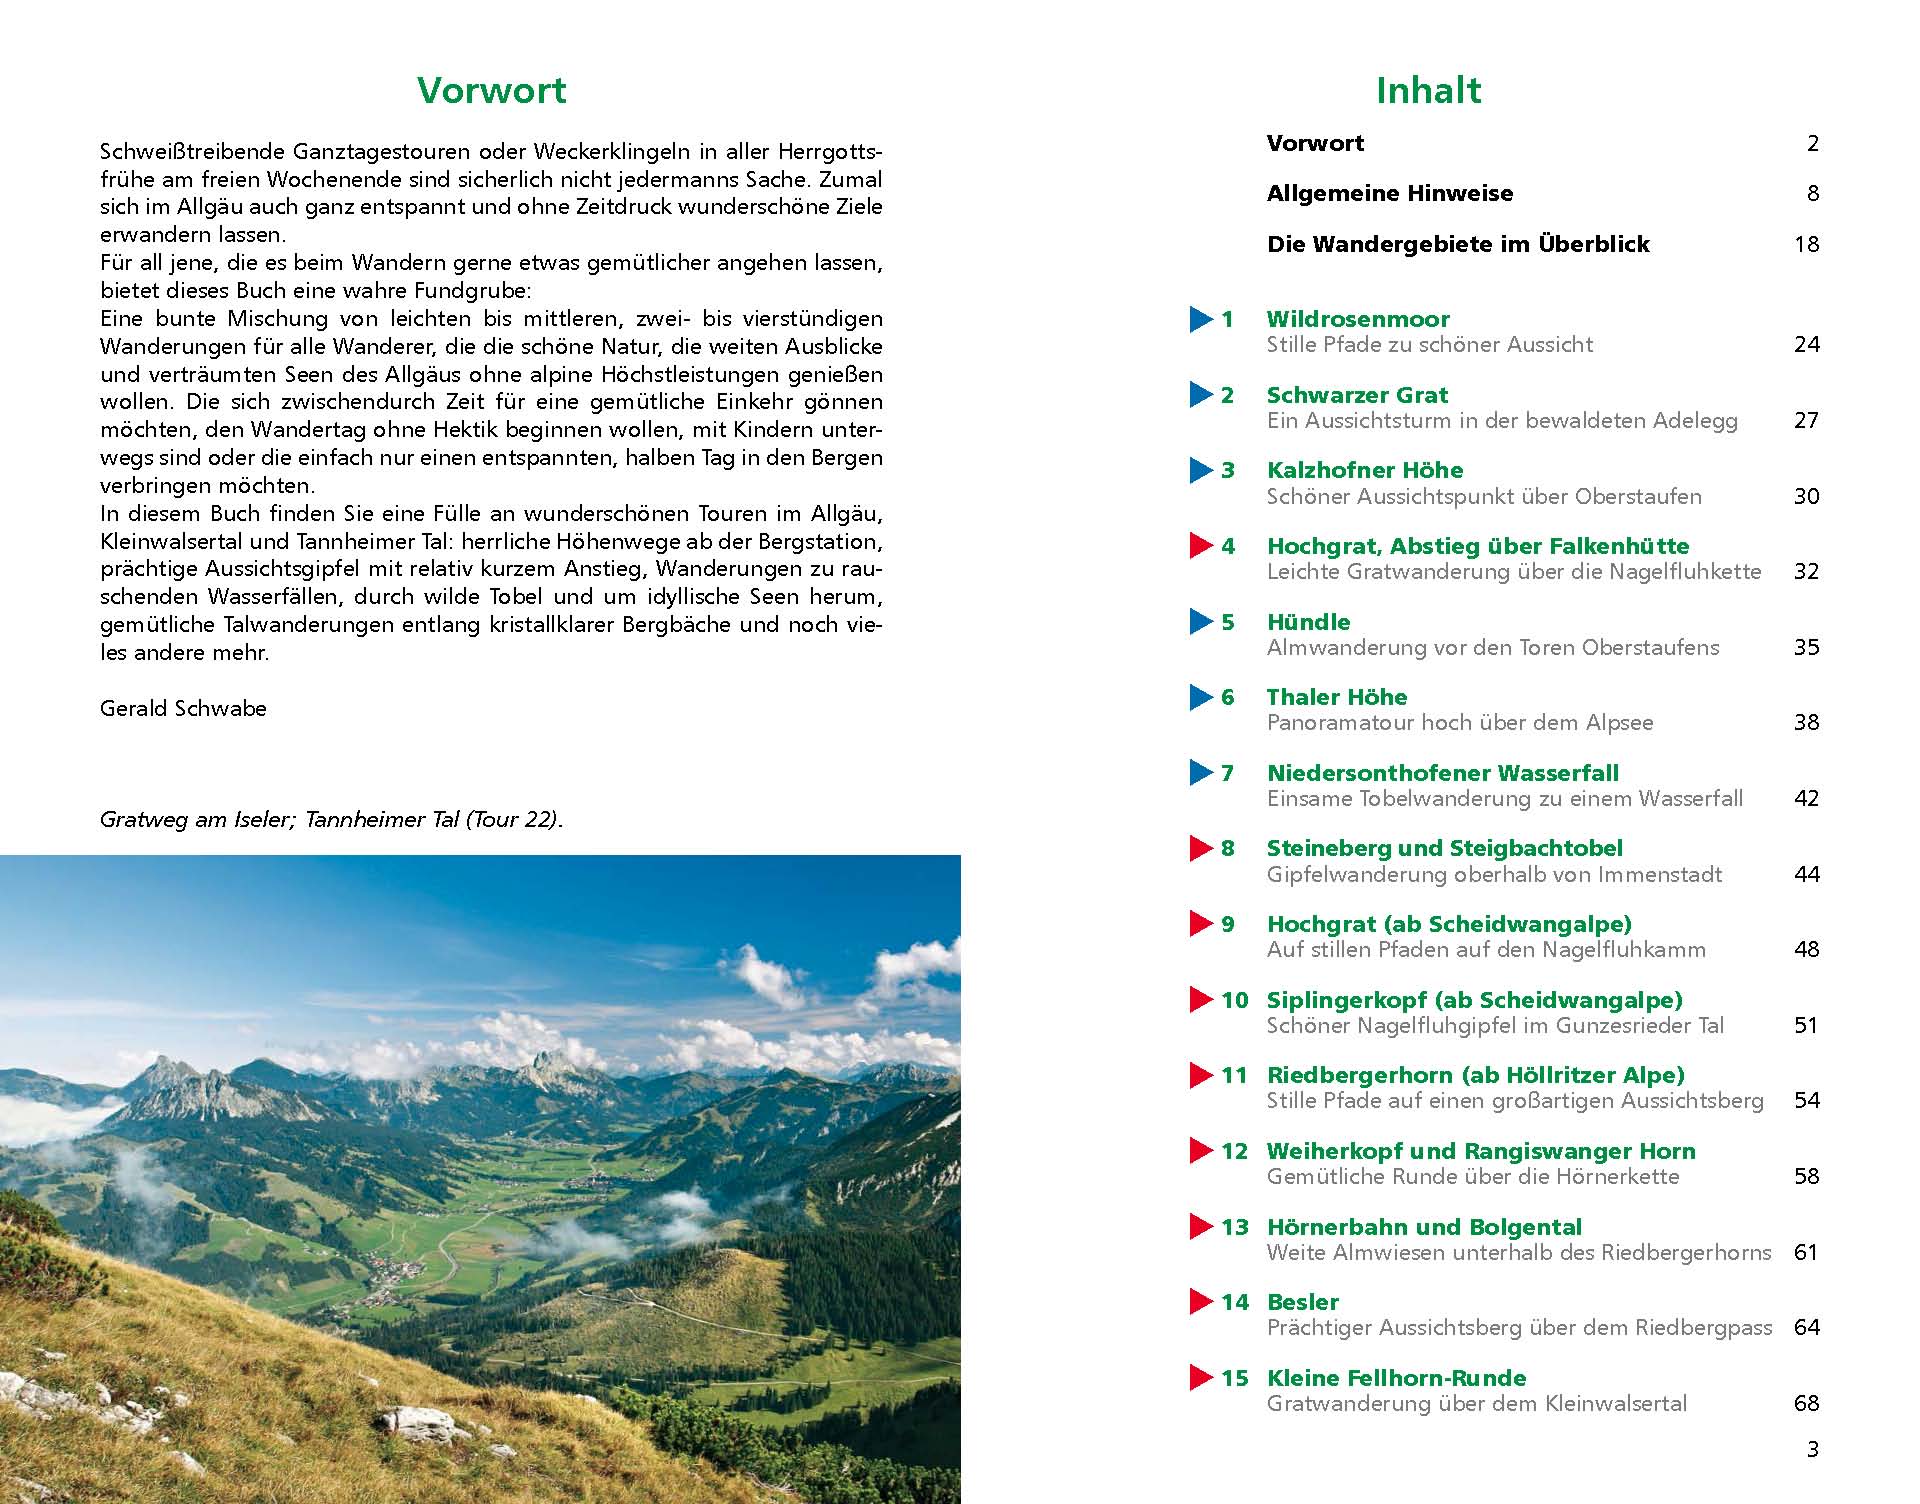 Buchtipp - Bergverlag Rother / Gerald Schwabe: Kurz & gut - Rother Wanderführer mit 43 Wandertouren im Allgäu inkl. Gipfelrastgarantie